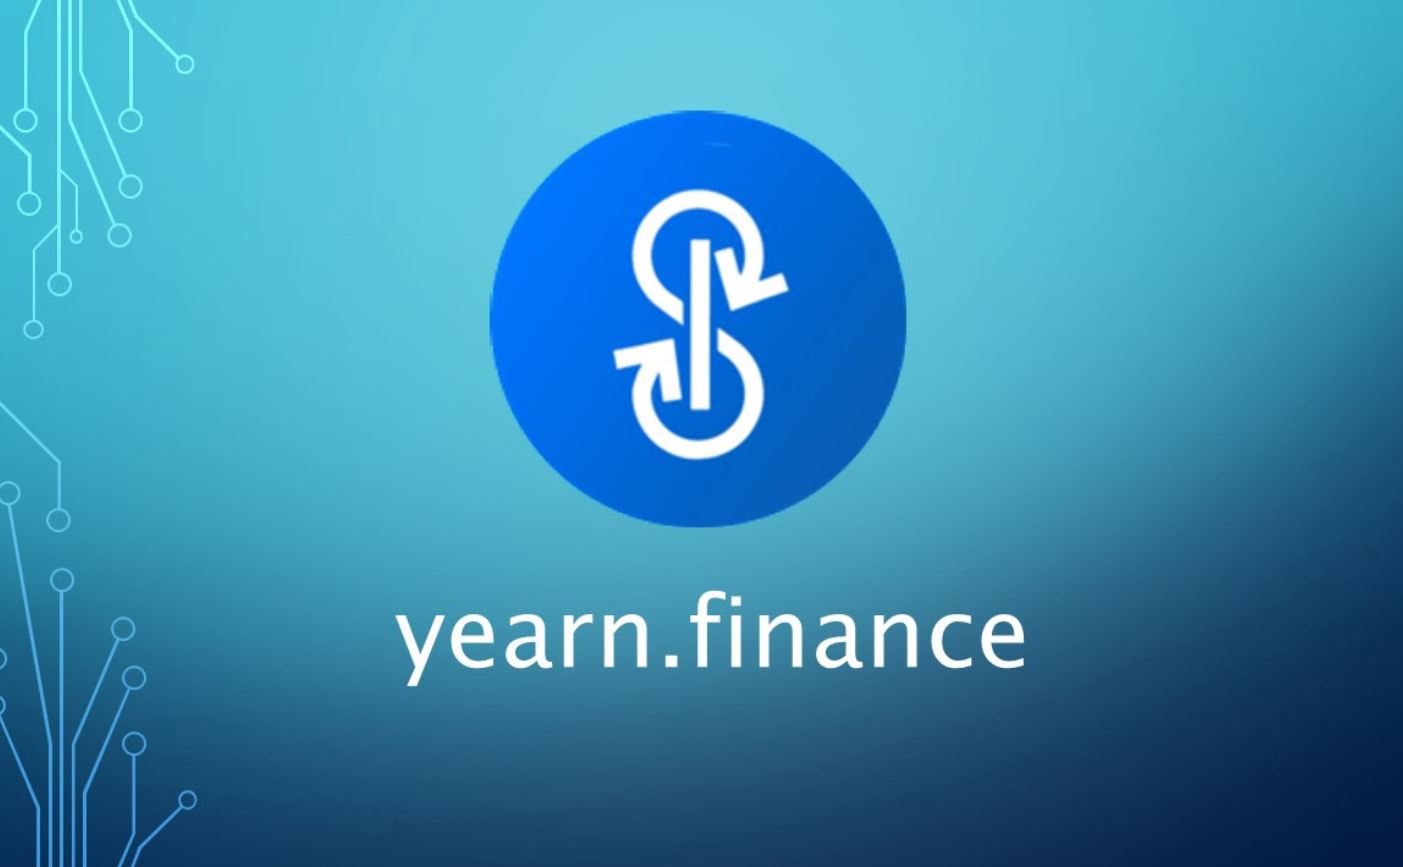 Yearn Finance